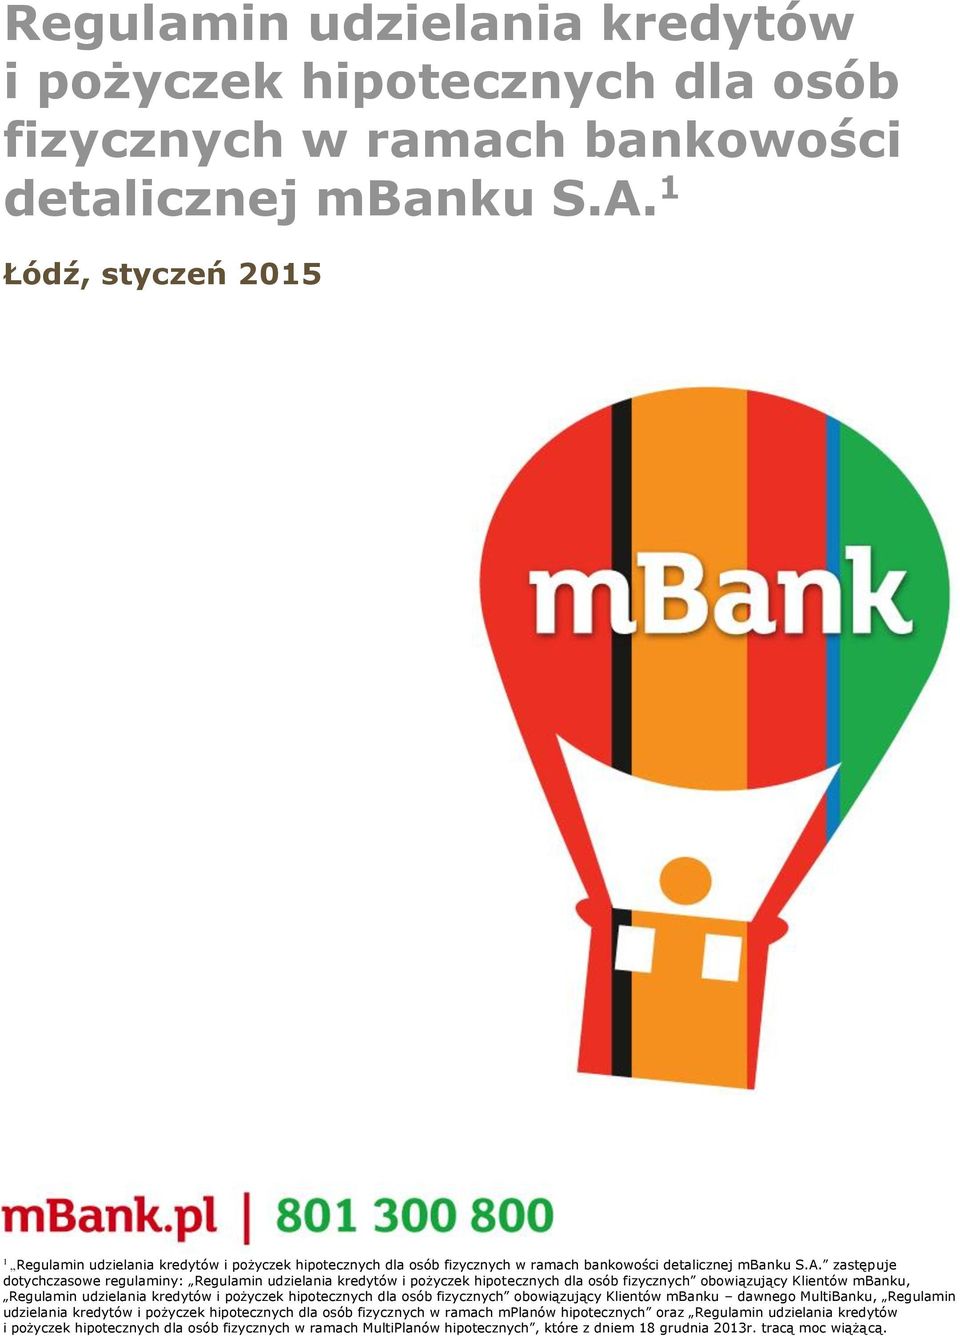 pożyczek hipotecznych dla osób fizycznych obowiązujący Klientów mbanku dawnego MultiBanku, Regulamin udzielania kredytów i pożyczek hipotecznych dla osób fizycznych w ramach mplanów hipotecznych